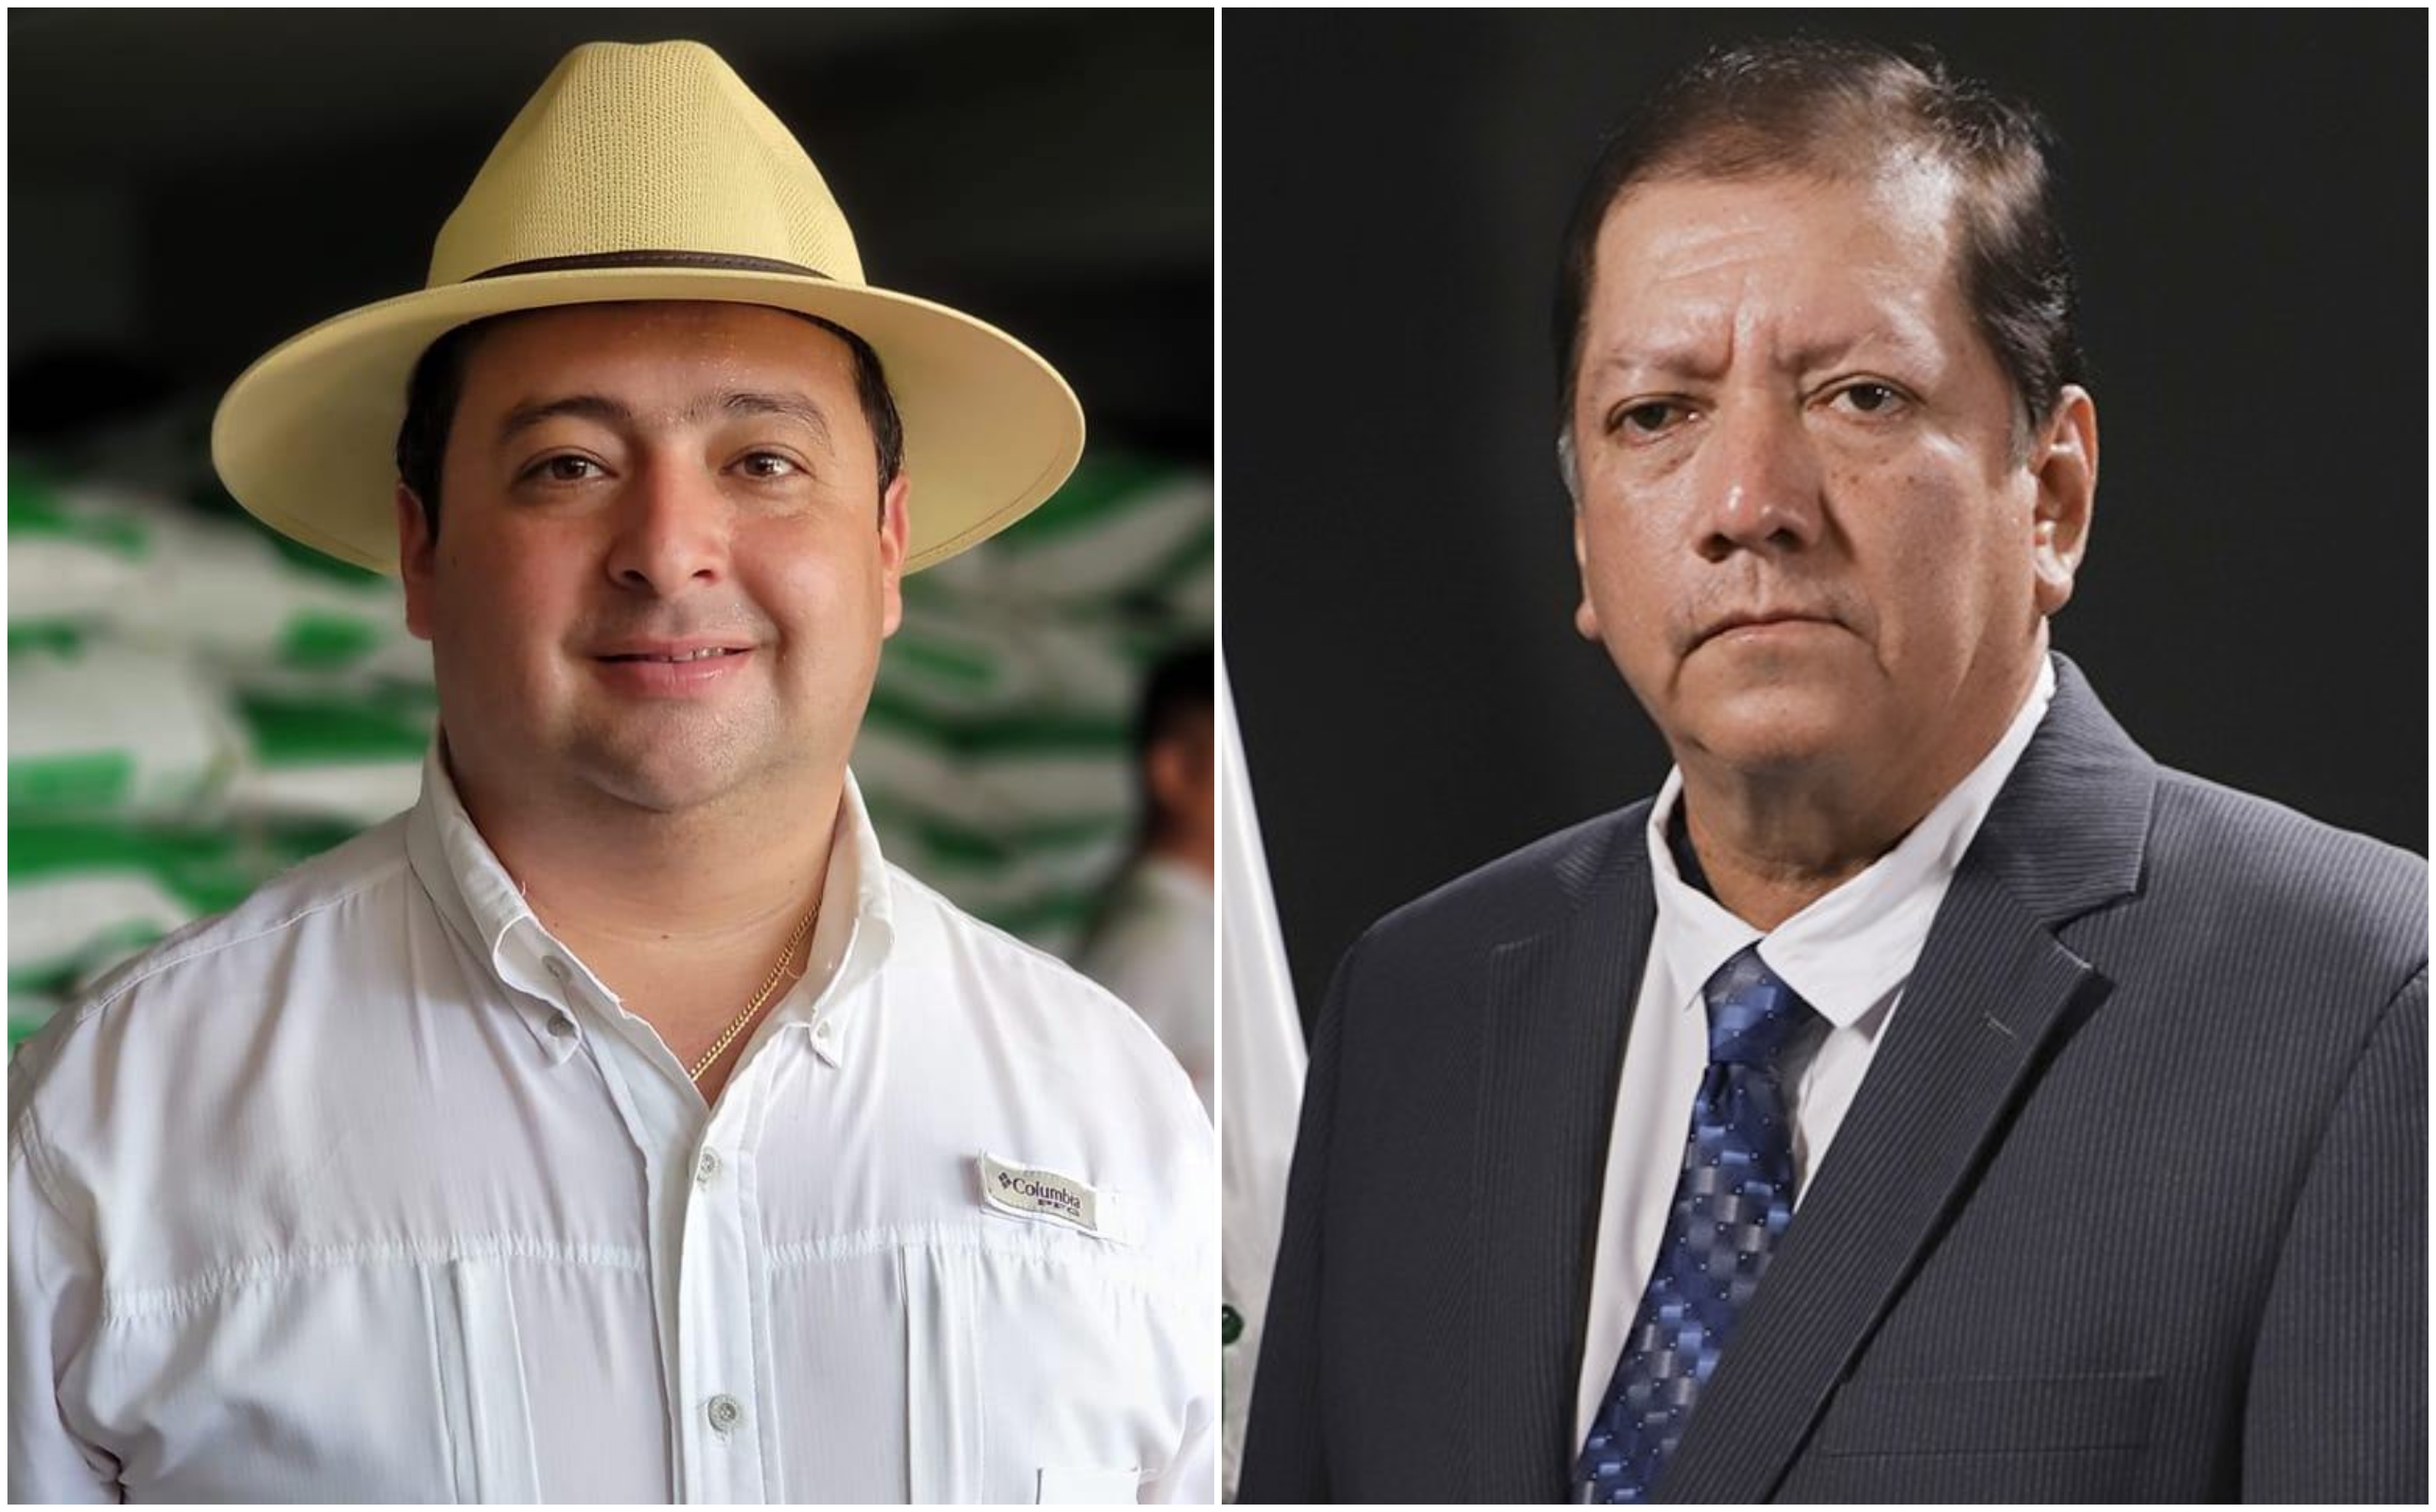 El alcalde de Nuevo San Carlos y el diputado distrital de Retalhuleu, José Luis Galindo (de traje) han sostenido disputas en los últimos meses. (Foto Prensa Libre: Facebook y Congreso GT)